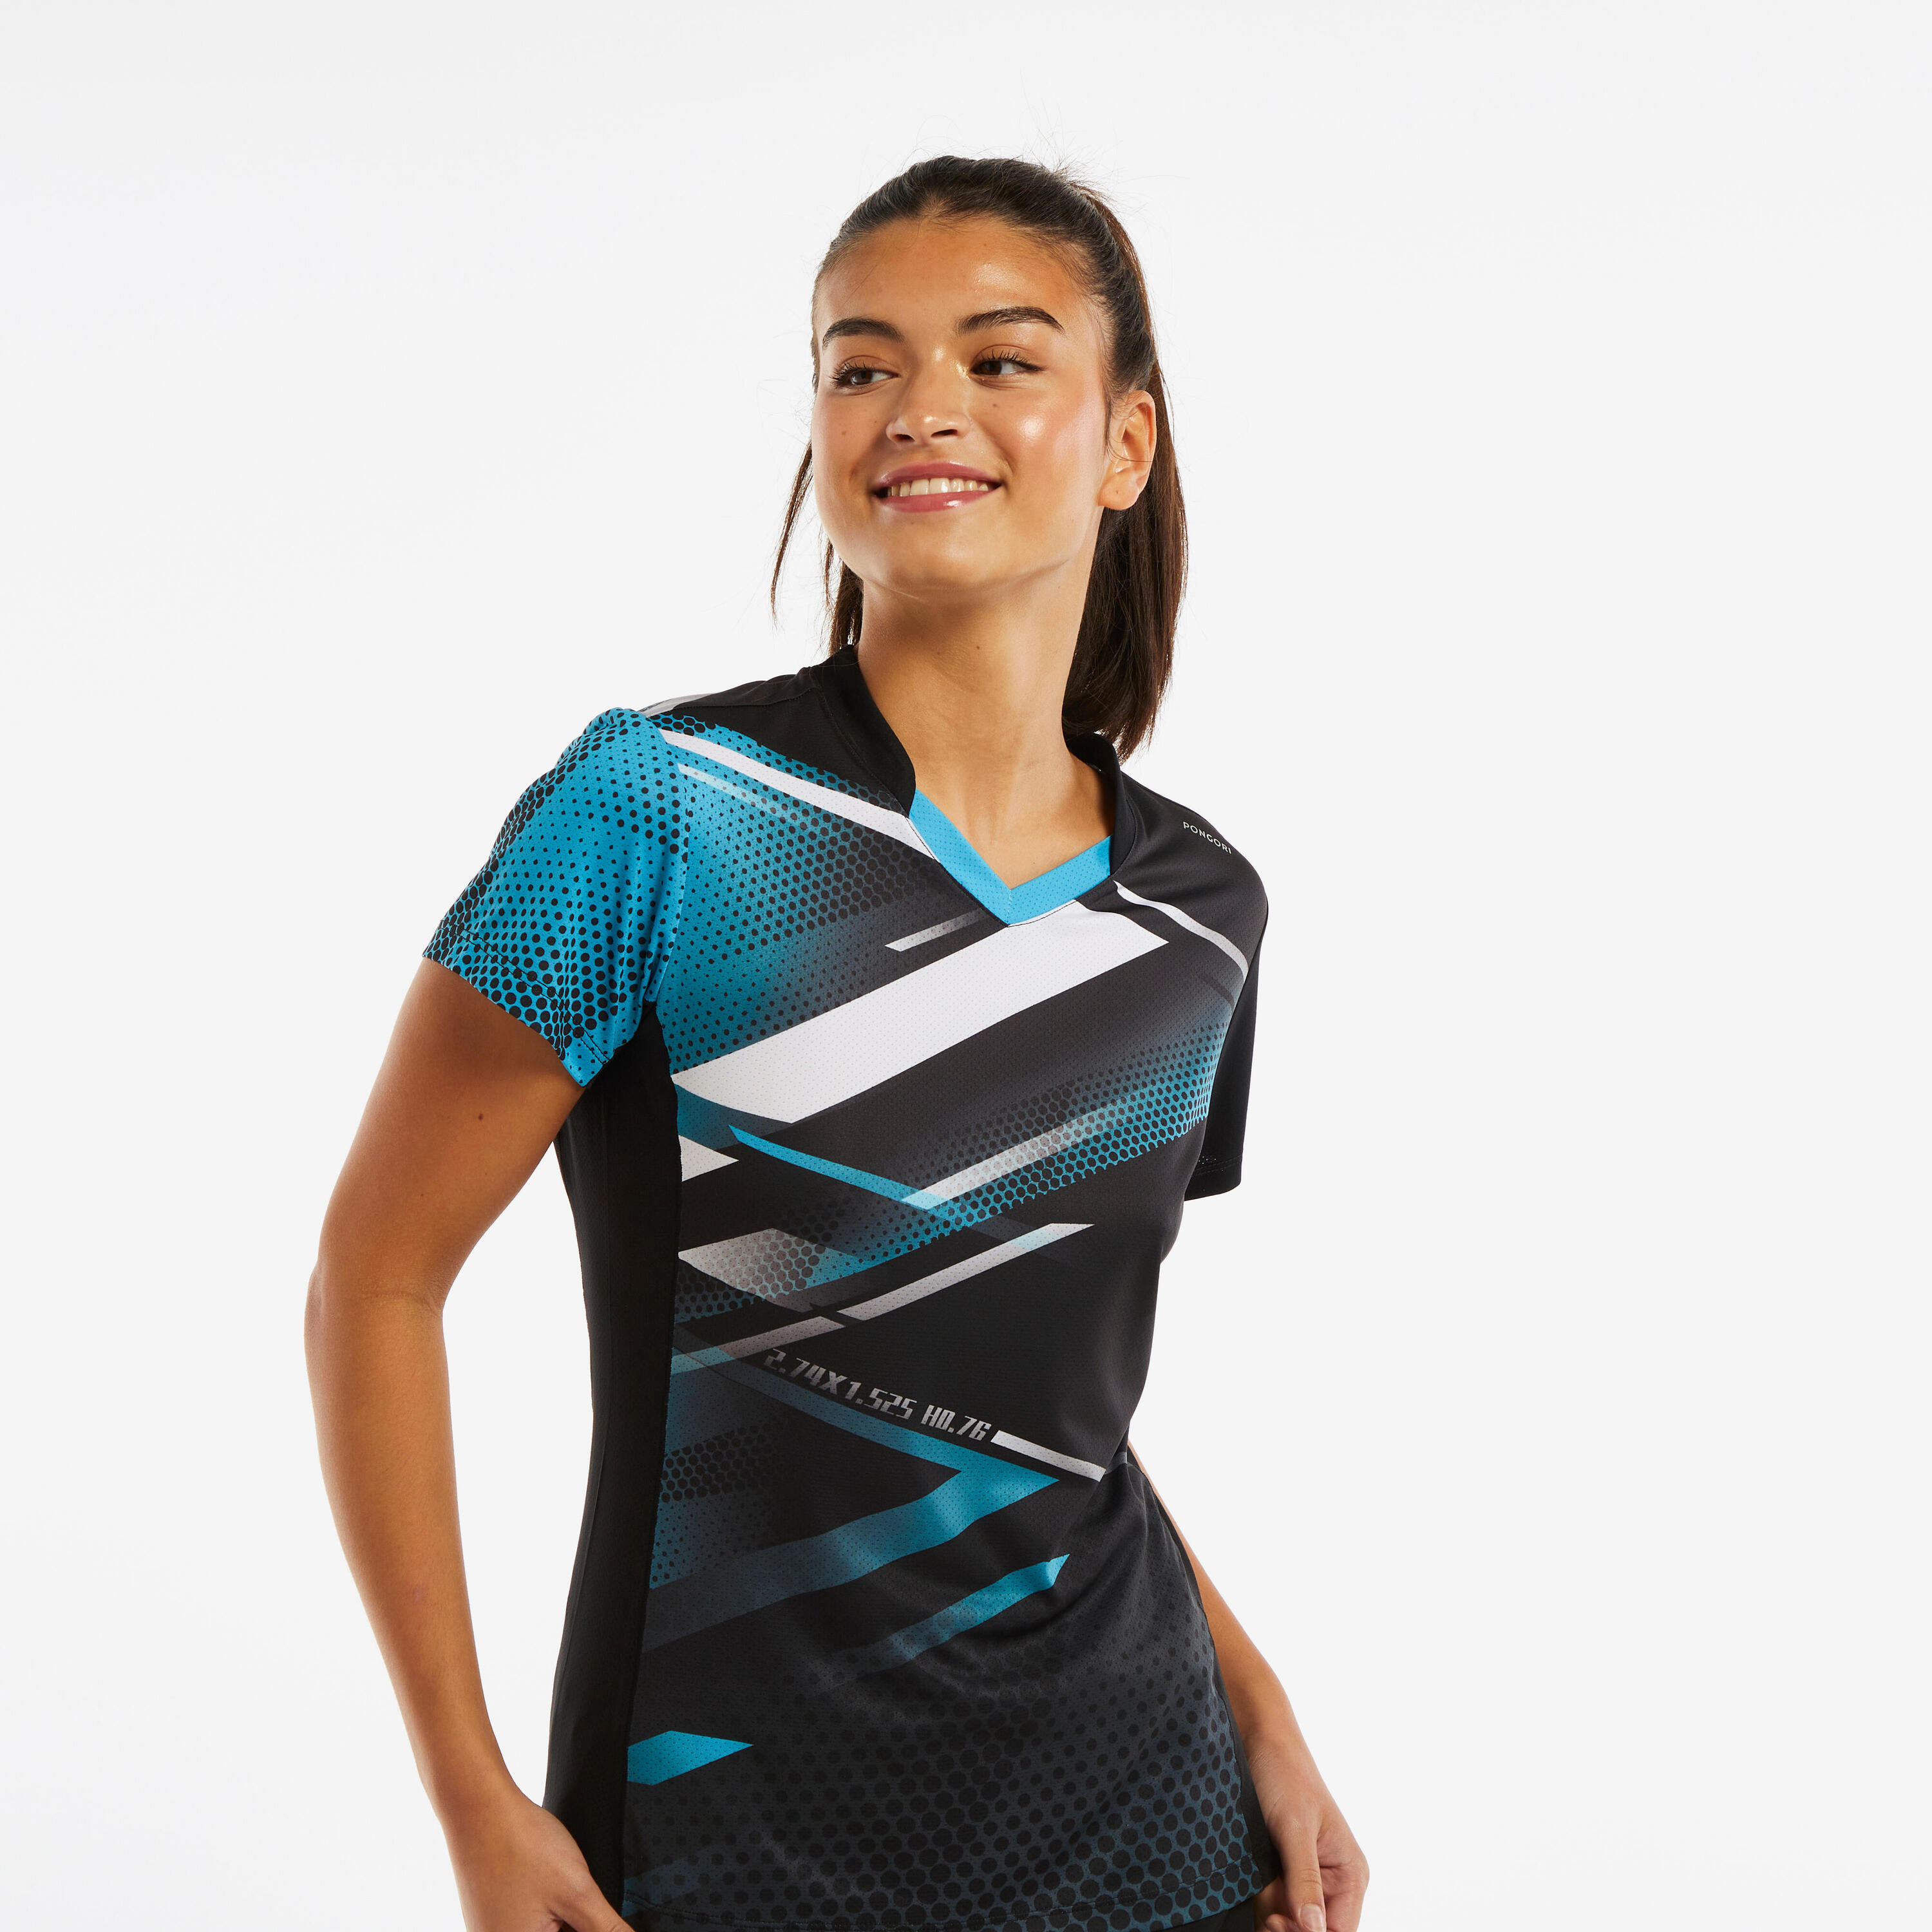 Women's Table Tennis T-Shirt TTP560 - Black/Blue 6/6